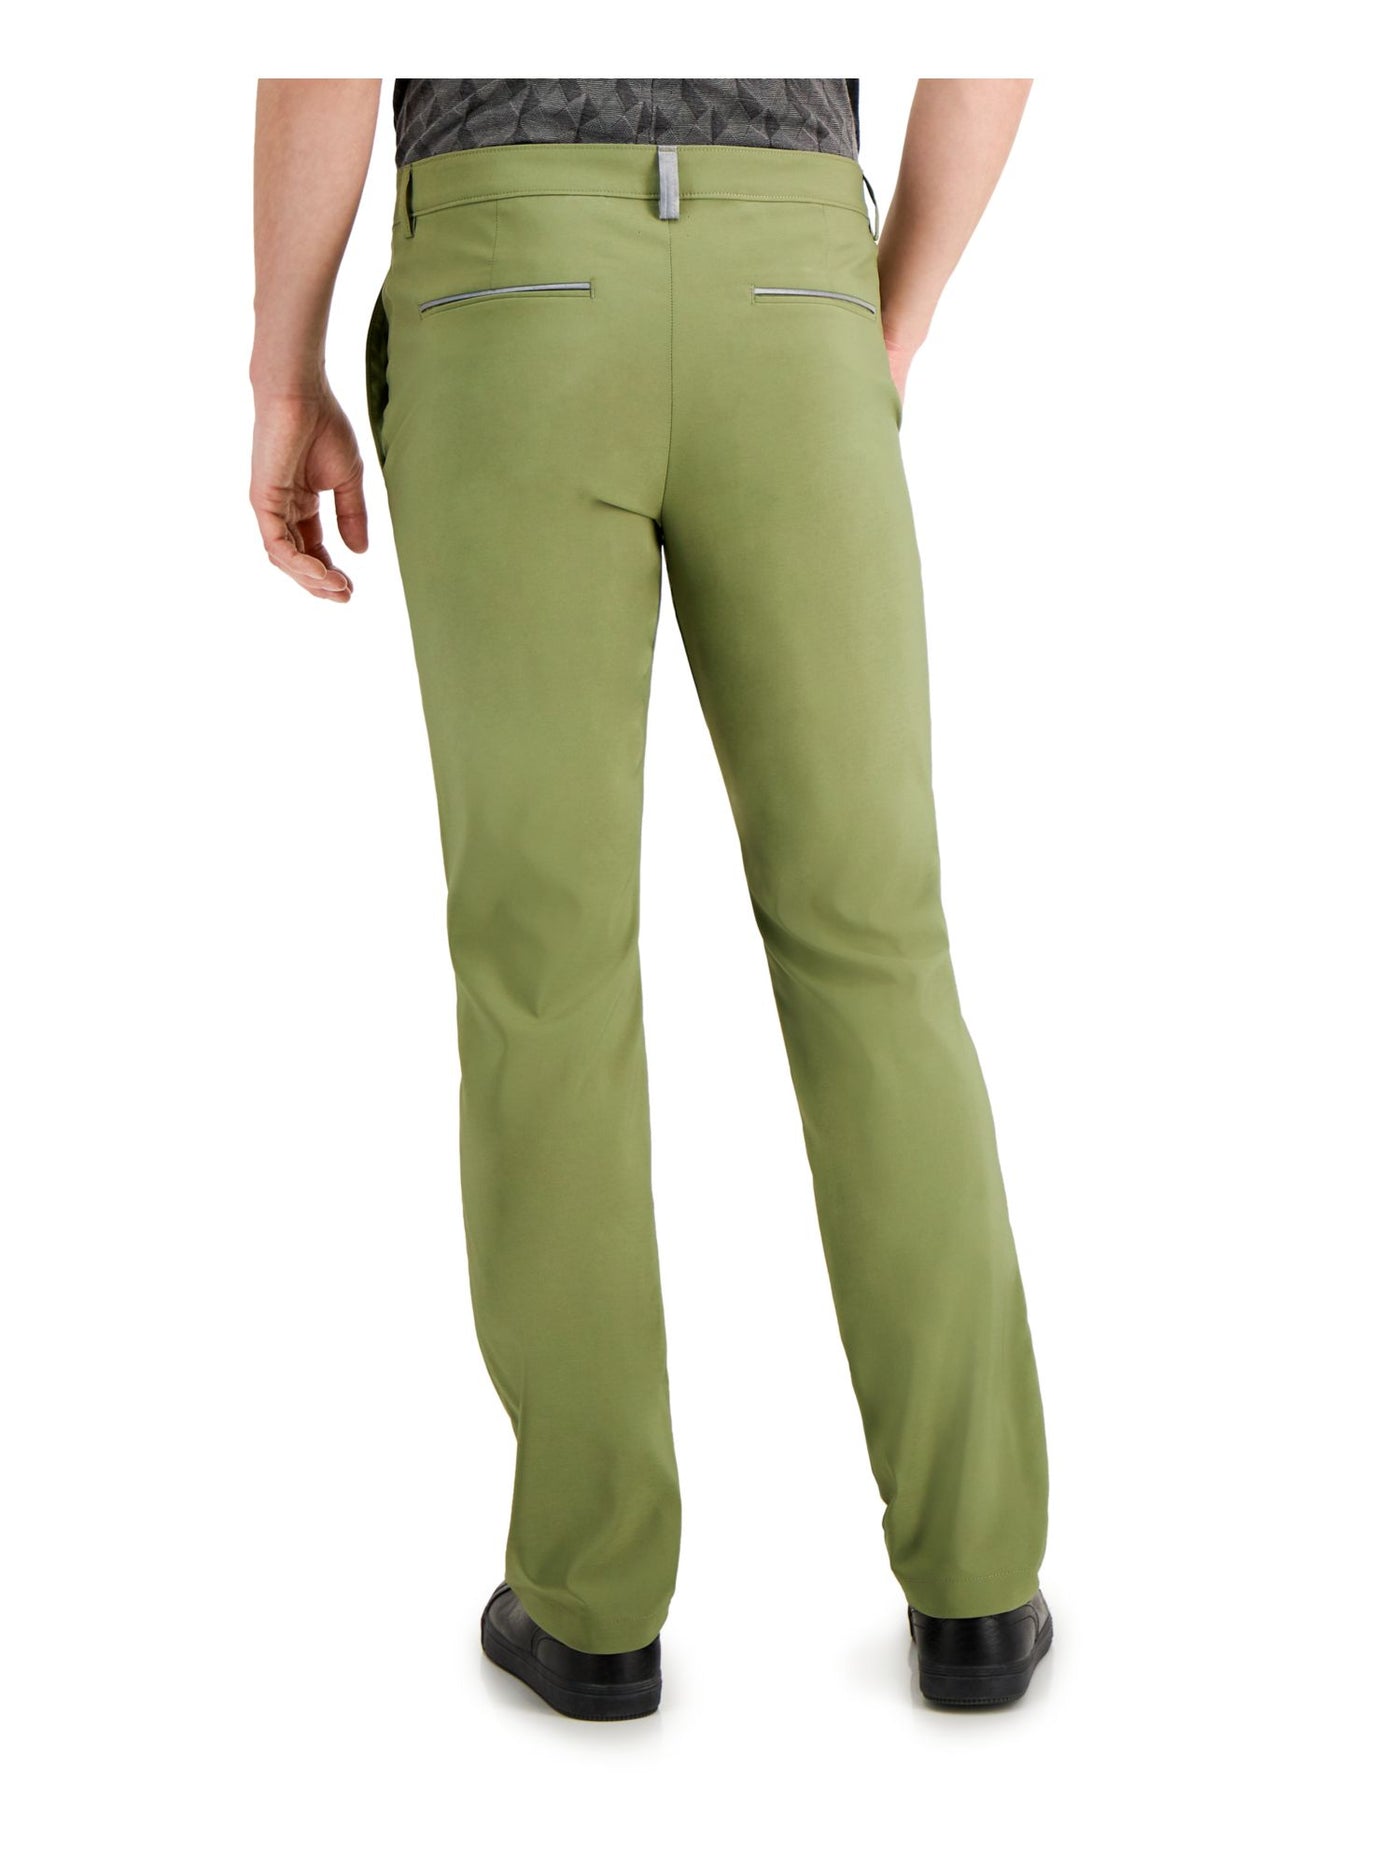 ALFANI Mens Green Lightweight, Classic Fit Moisture Wicking Pants W40/ L32